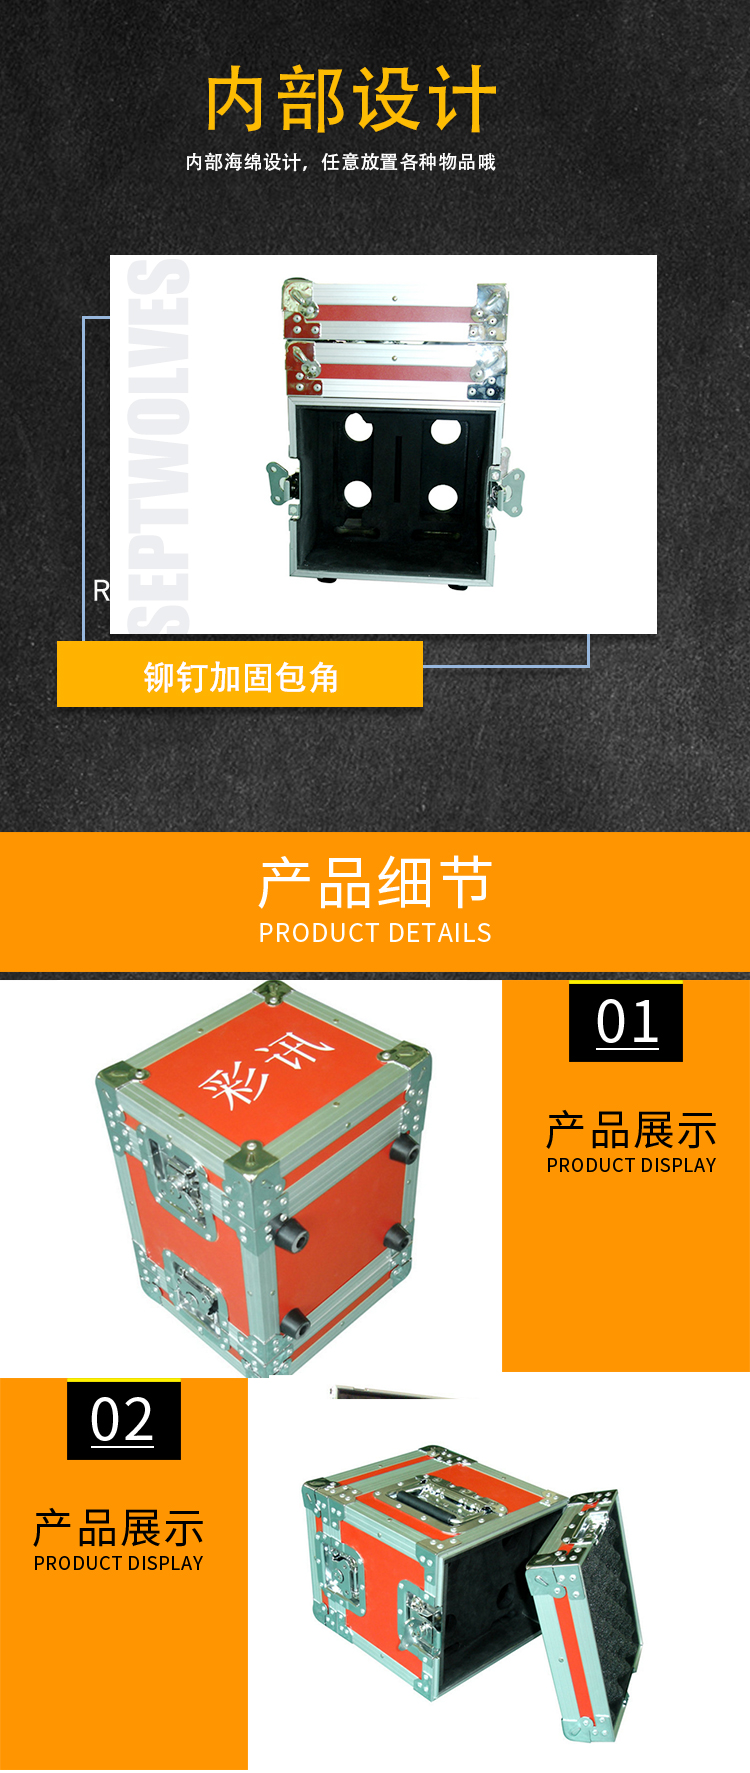 深圳市LED智能演示箱厂家厂家供应LED智能演示箱厂家